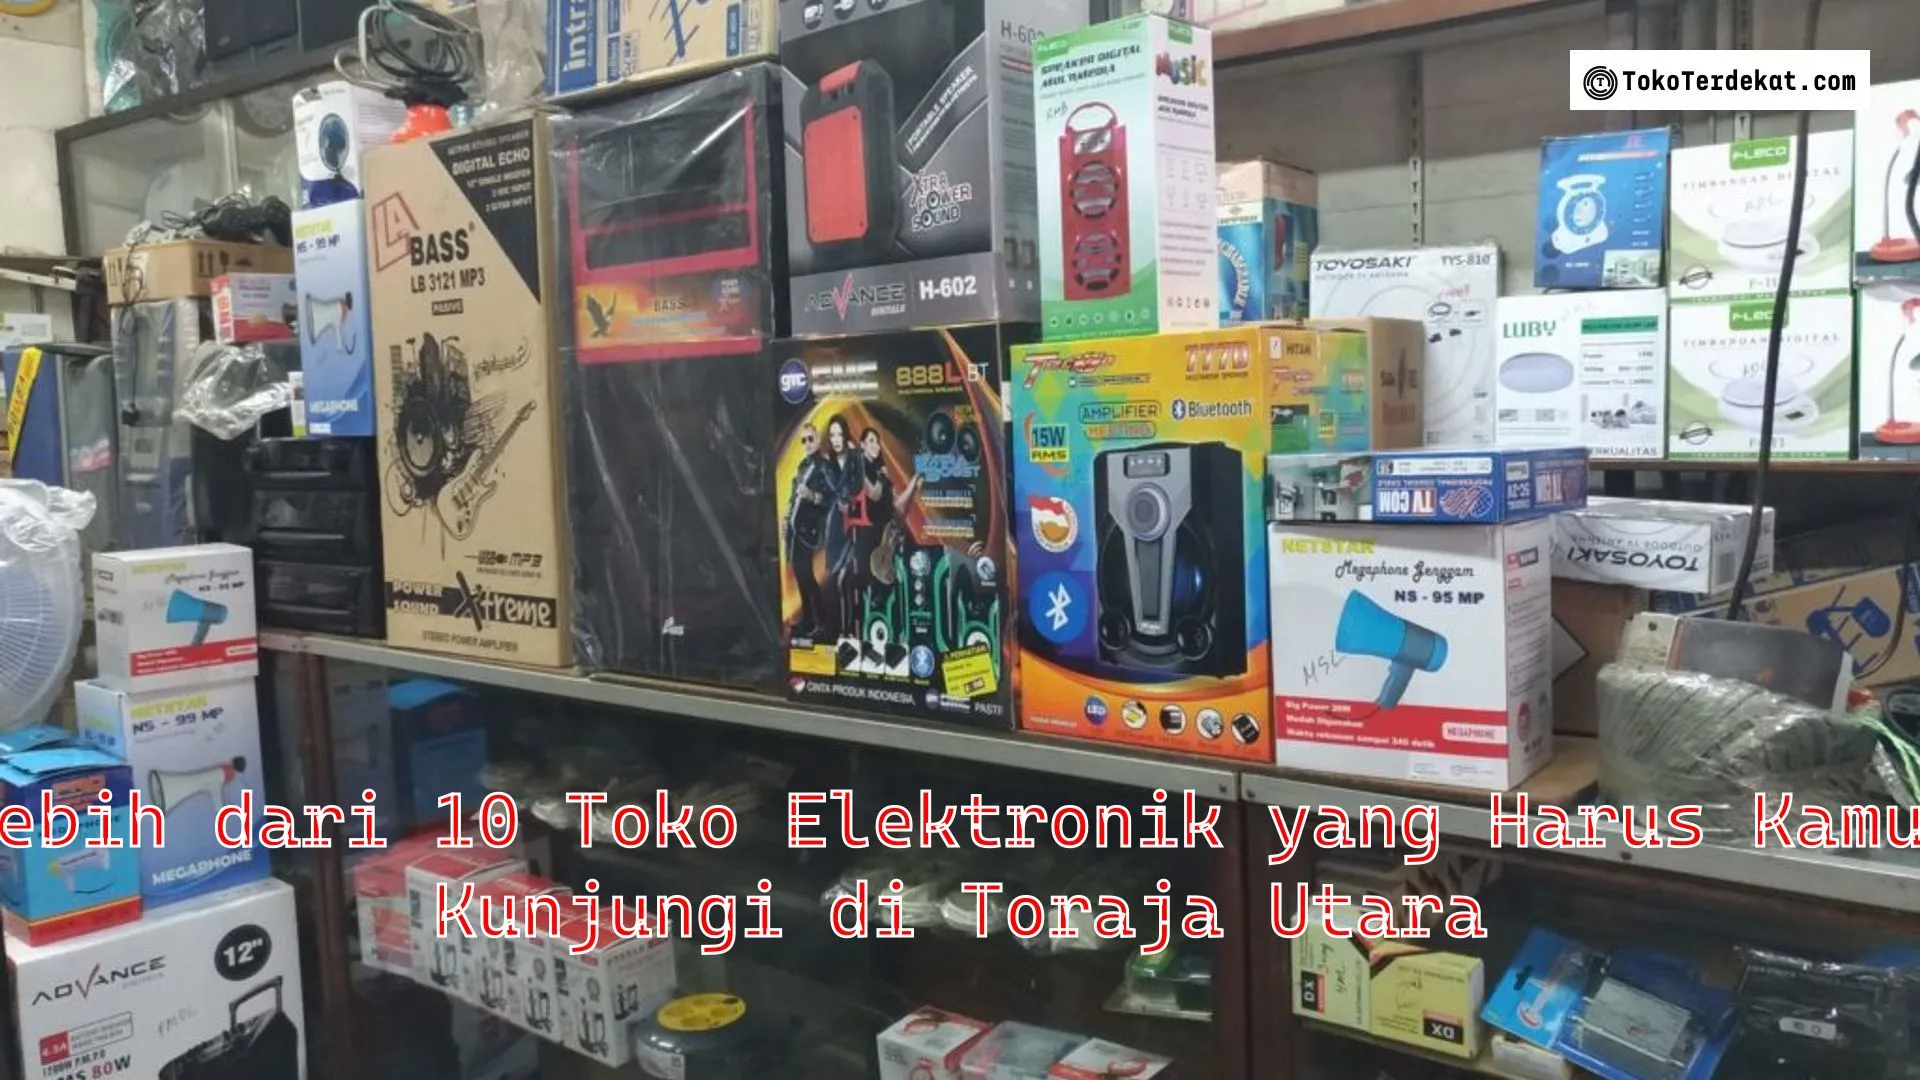 Lebih dari 10 Toko Elektronik yang Harus Kamu Kunjungi di Toraja Utara